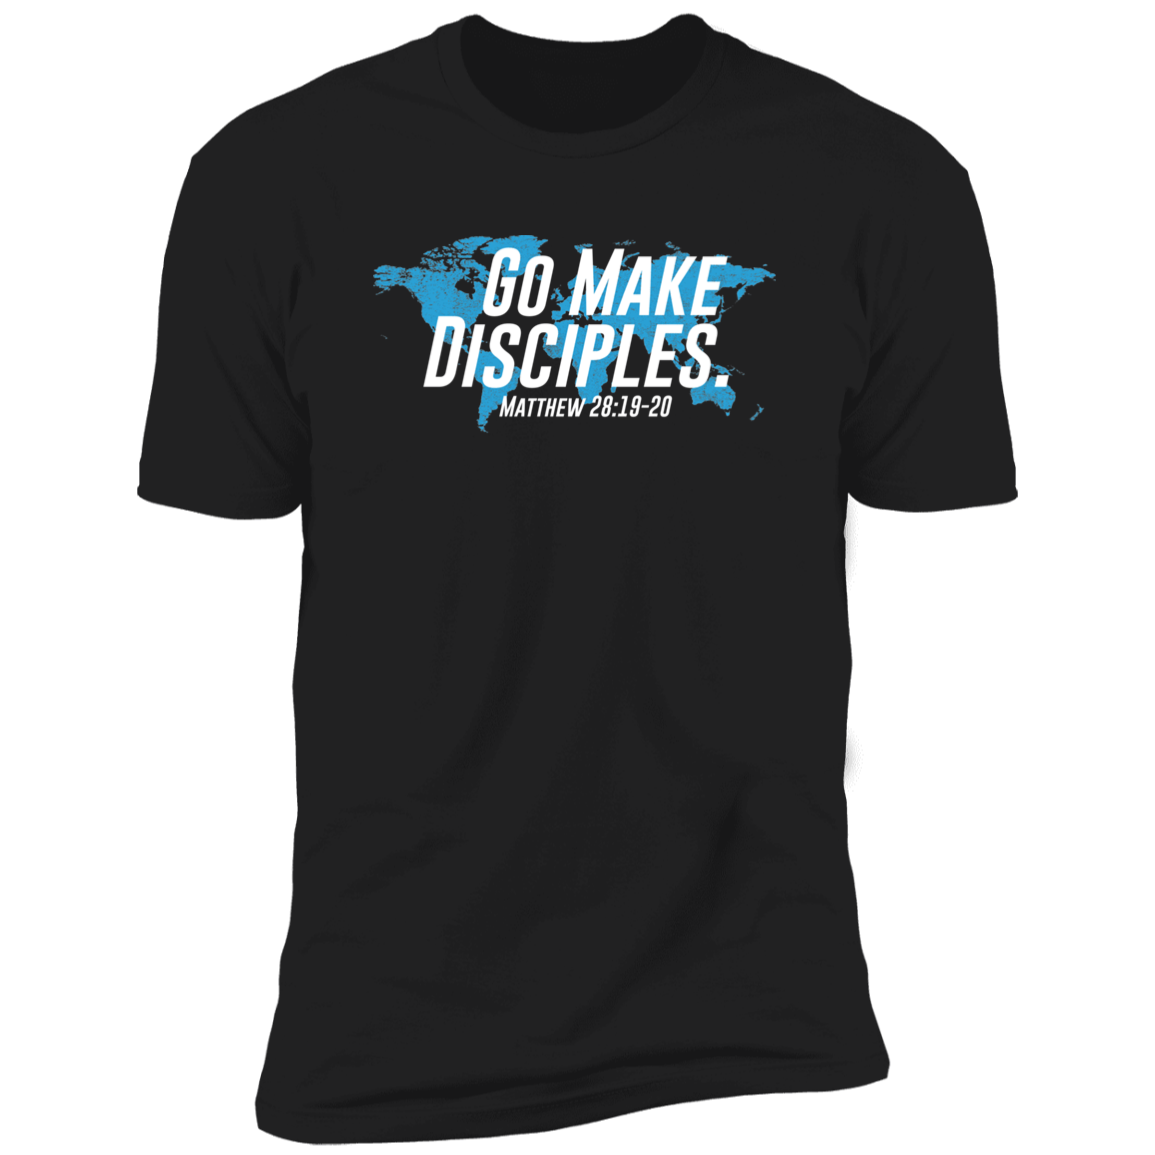 Make Disciples - Premium Soft T-Shirt